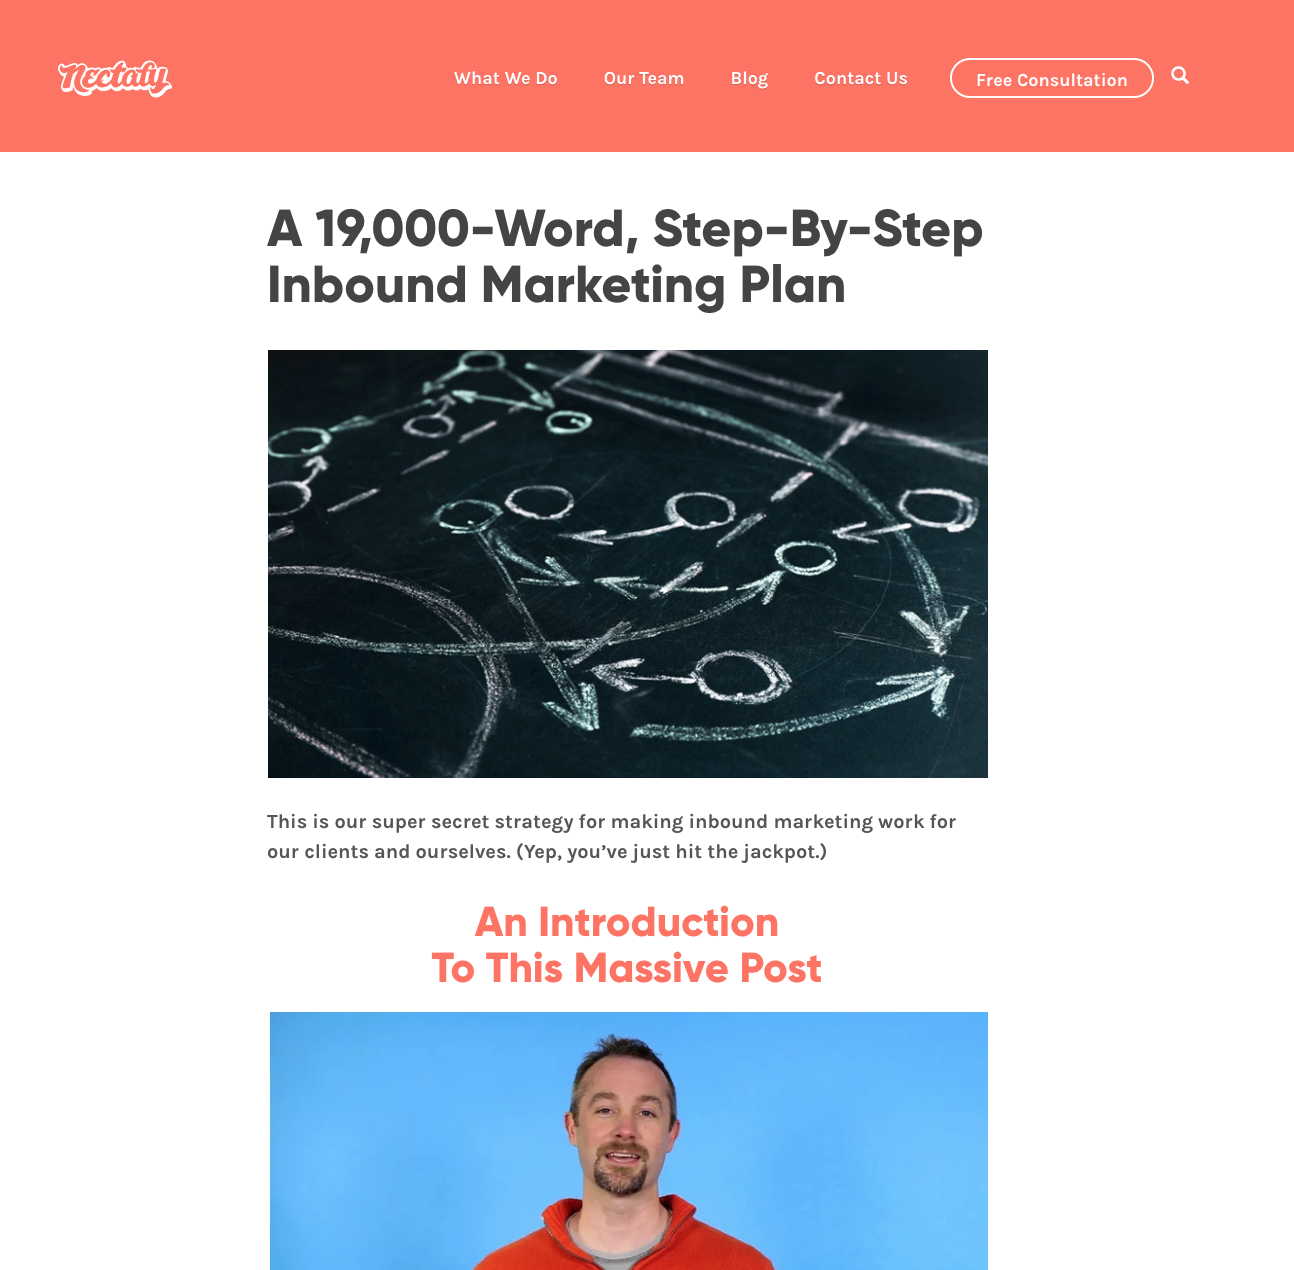 A 19,000-Word, Step-By-Step Inbound Marketing Plan